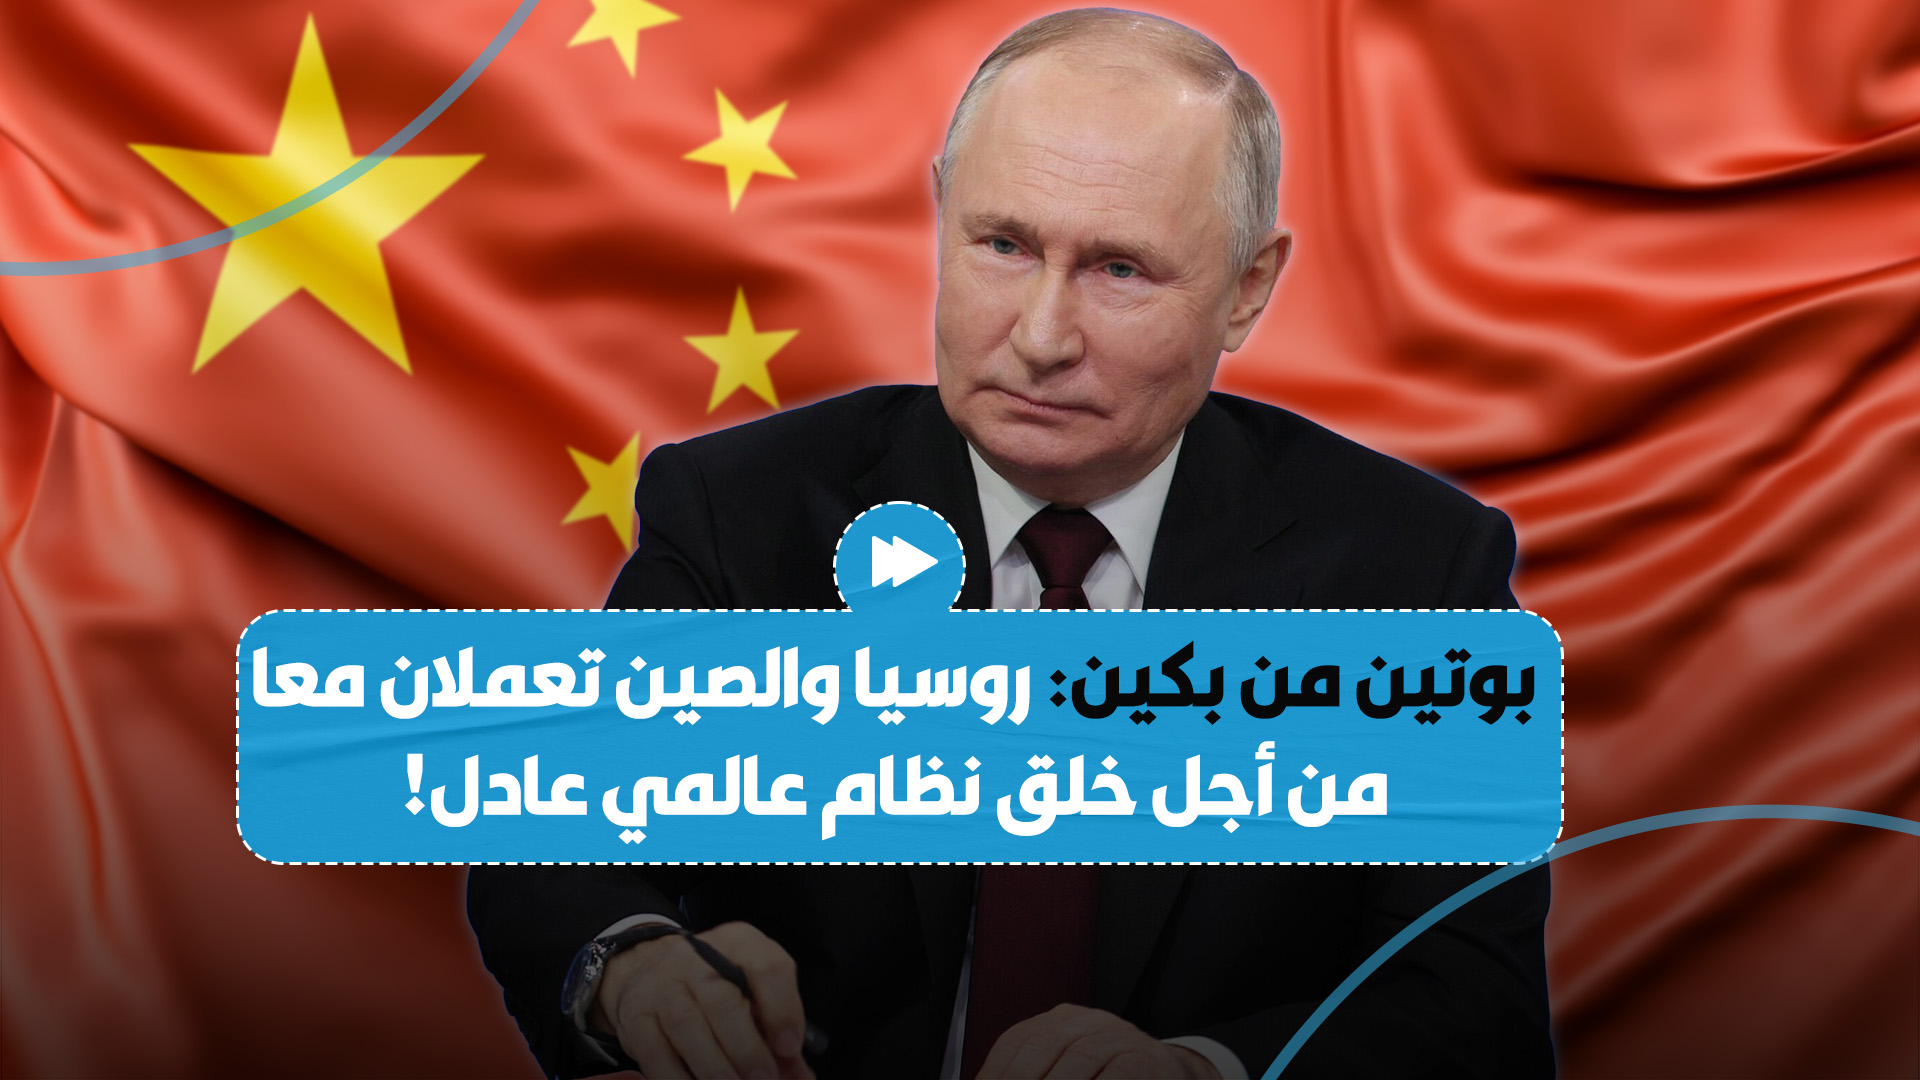 بوتين يؤكد أن بلاده والصين تعملان من أجل إنشاء نظام عالمي متعدد الأقطاب أكثر عدالة وديمقراطية